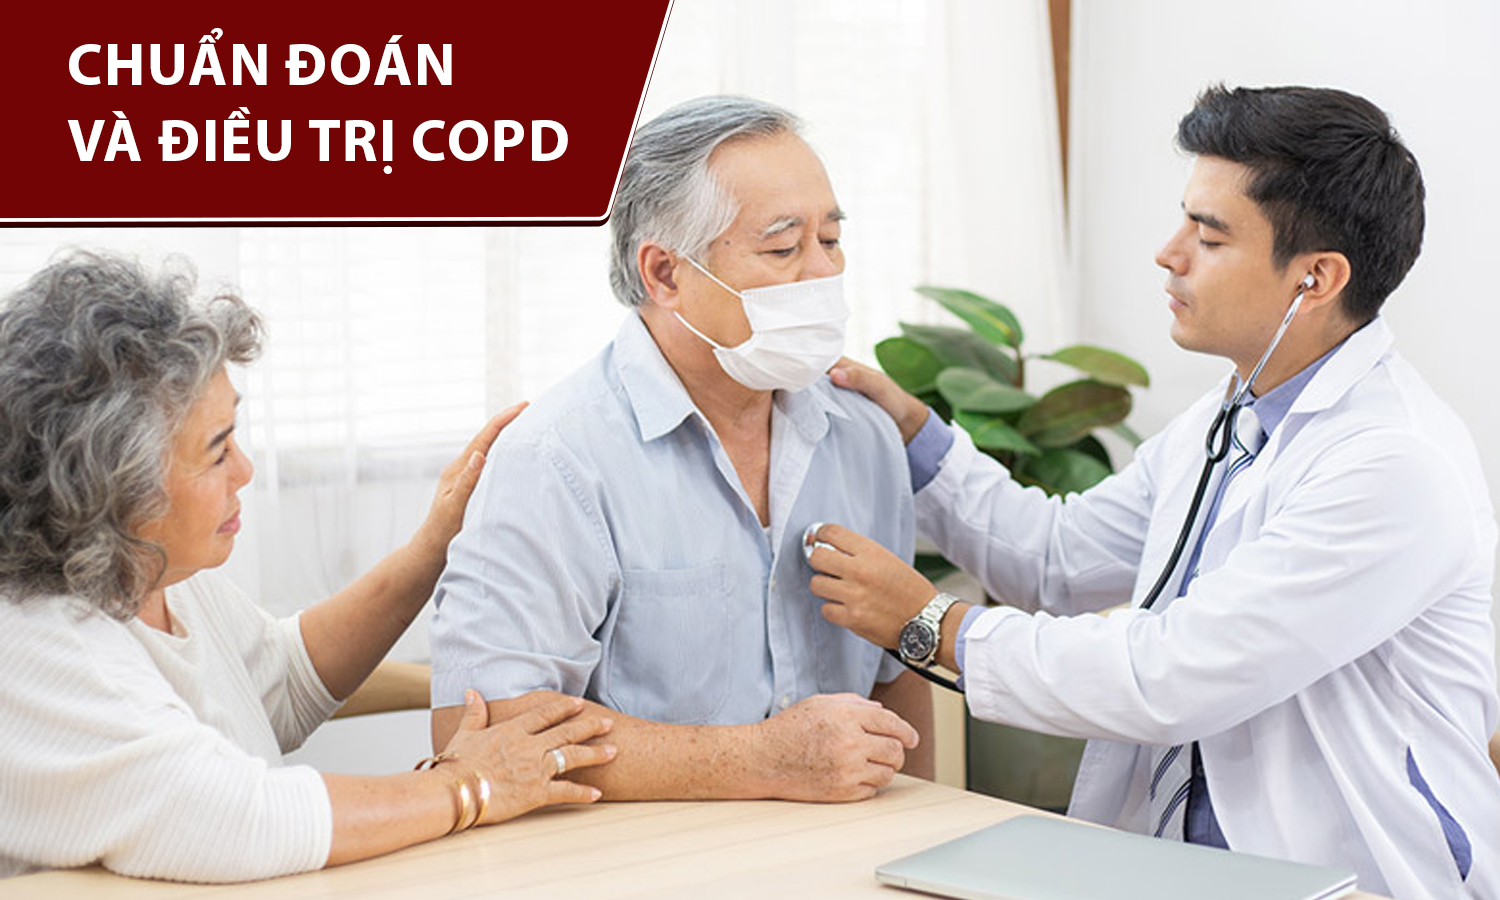 Ảnh: Chuẩn đoán và điều trị COPD